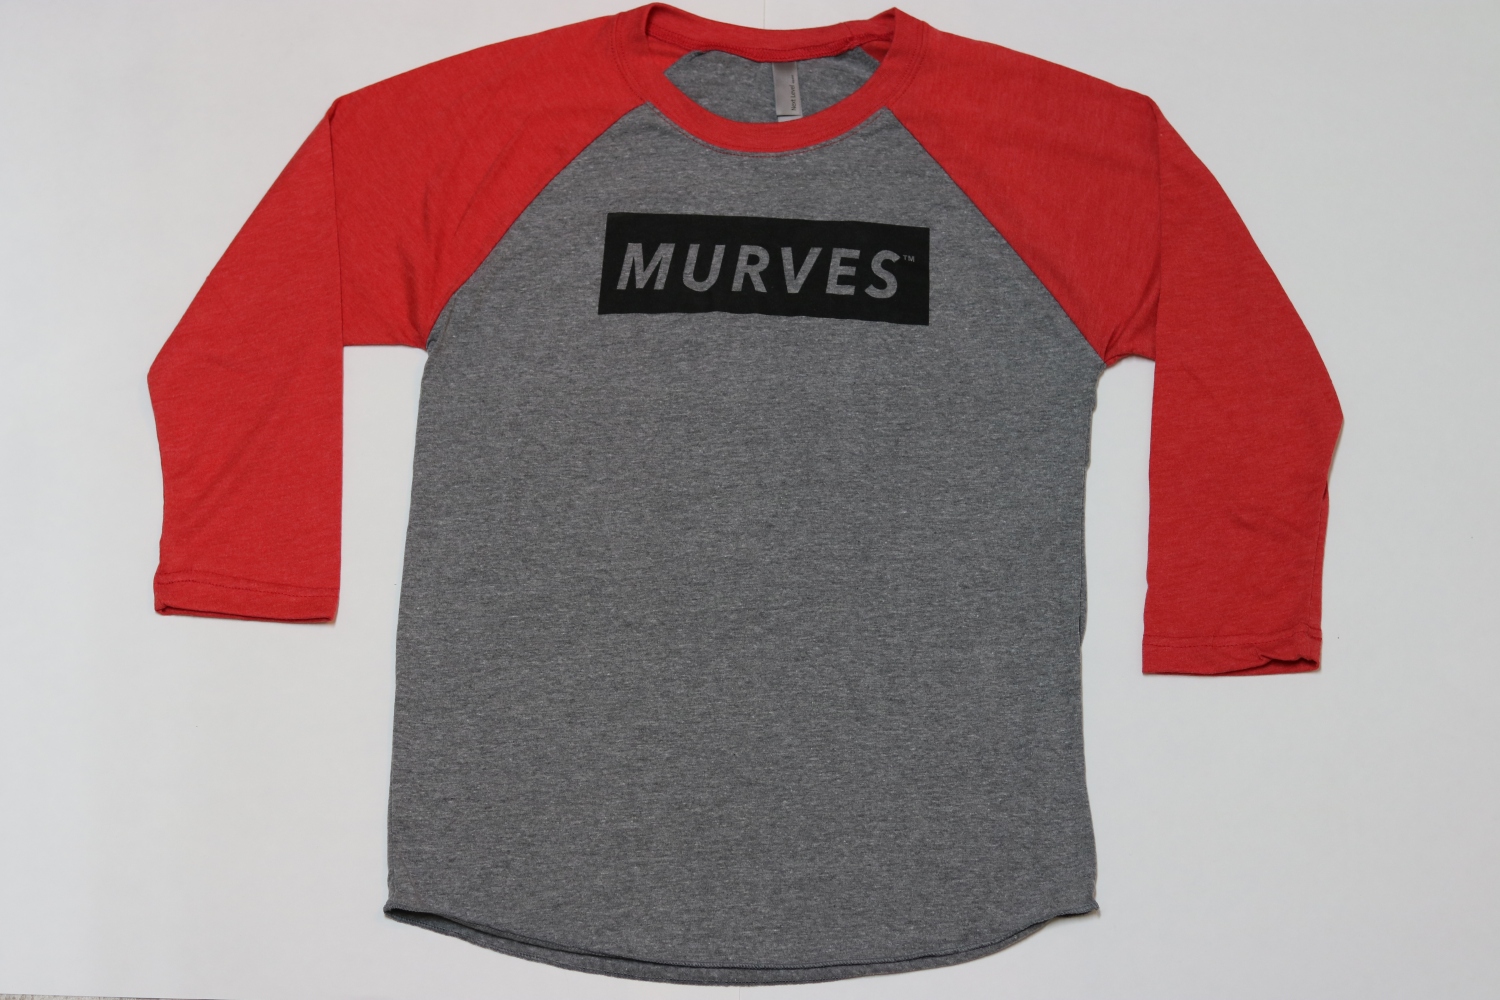 JUST RELEASED: MURVES™ Baseball Tees – Hannah Miller Fitness Blog